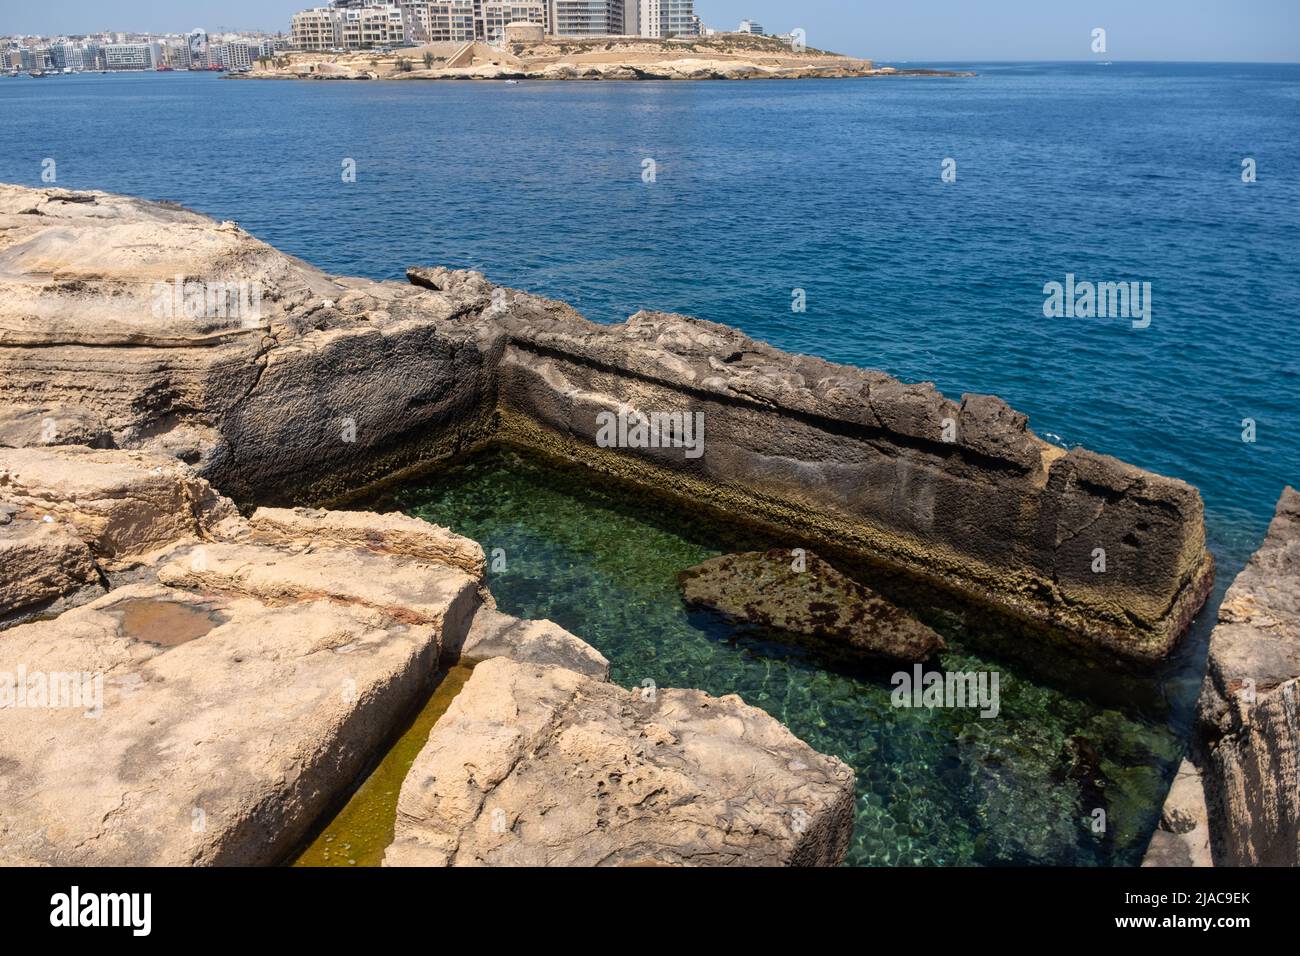 Piscina scolpita nella roccia, la Valletta, Malta Foto Stock